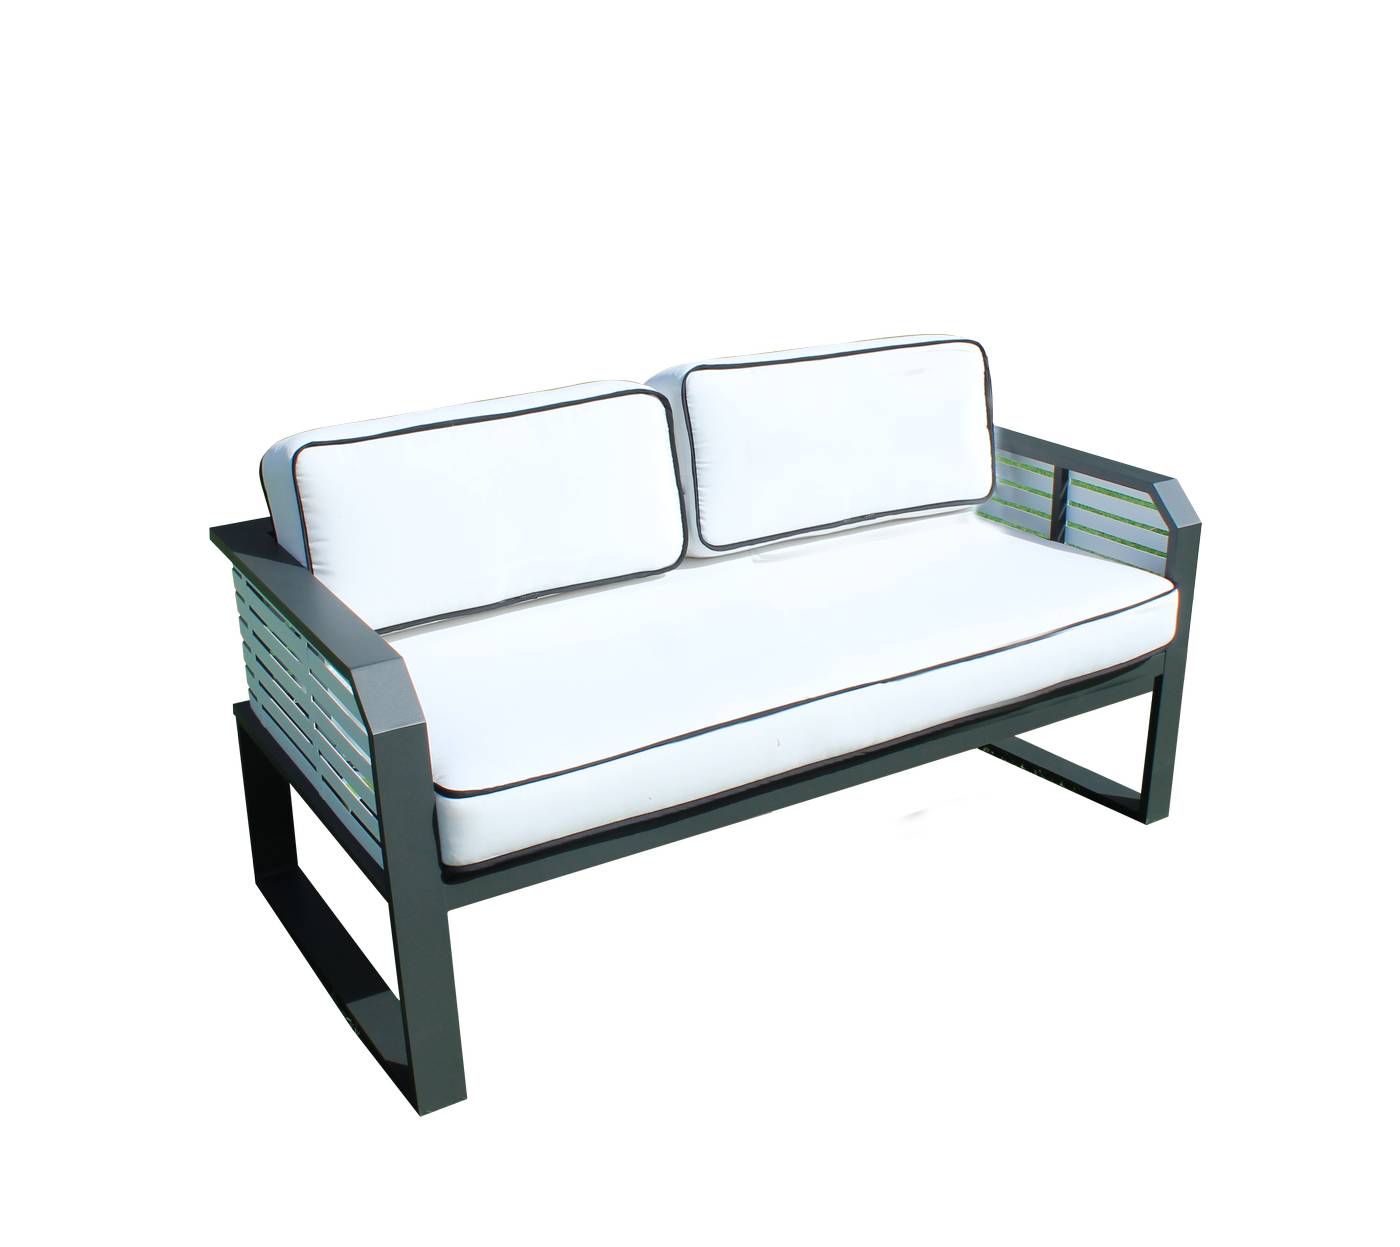 Coqueto sofá 2 plazas de alumnio bicolor, con cojines gran confort desenfundables.